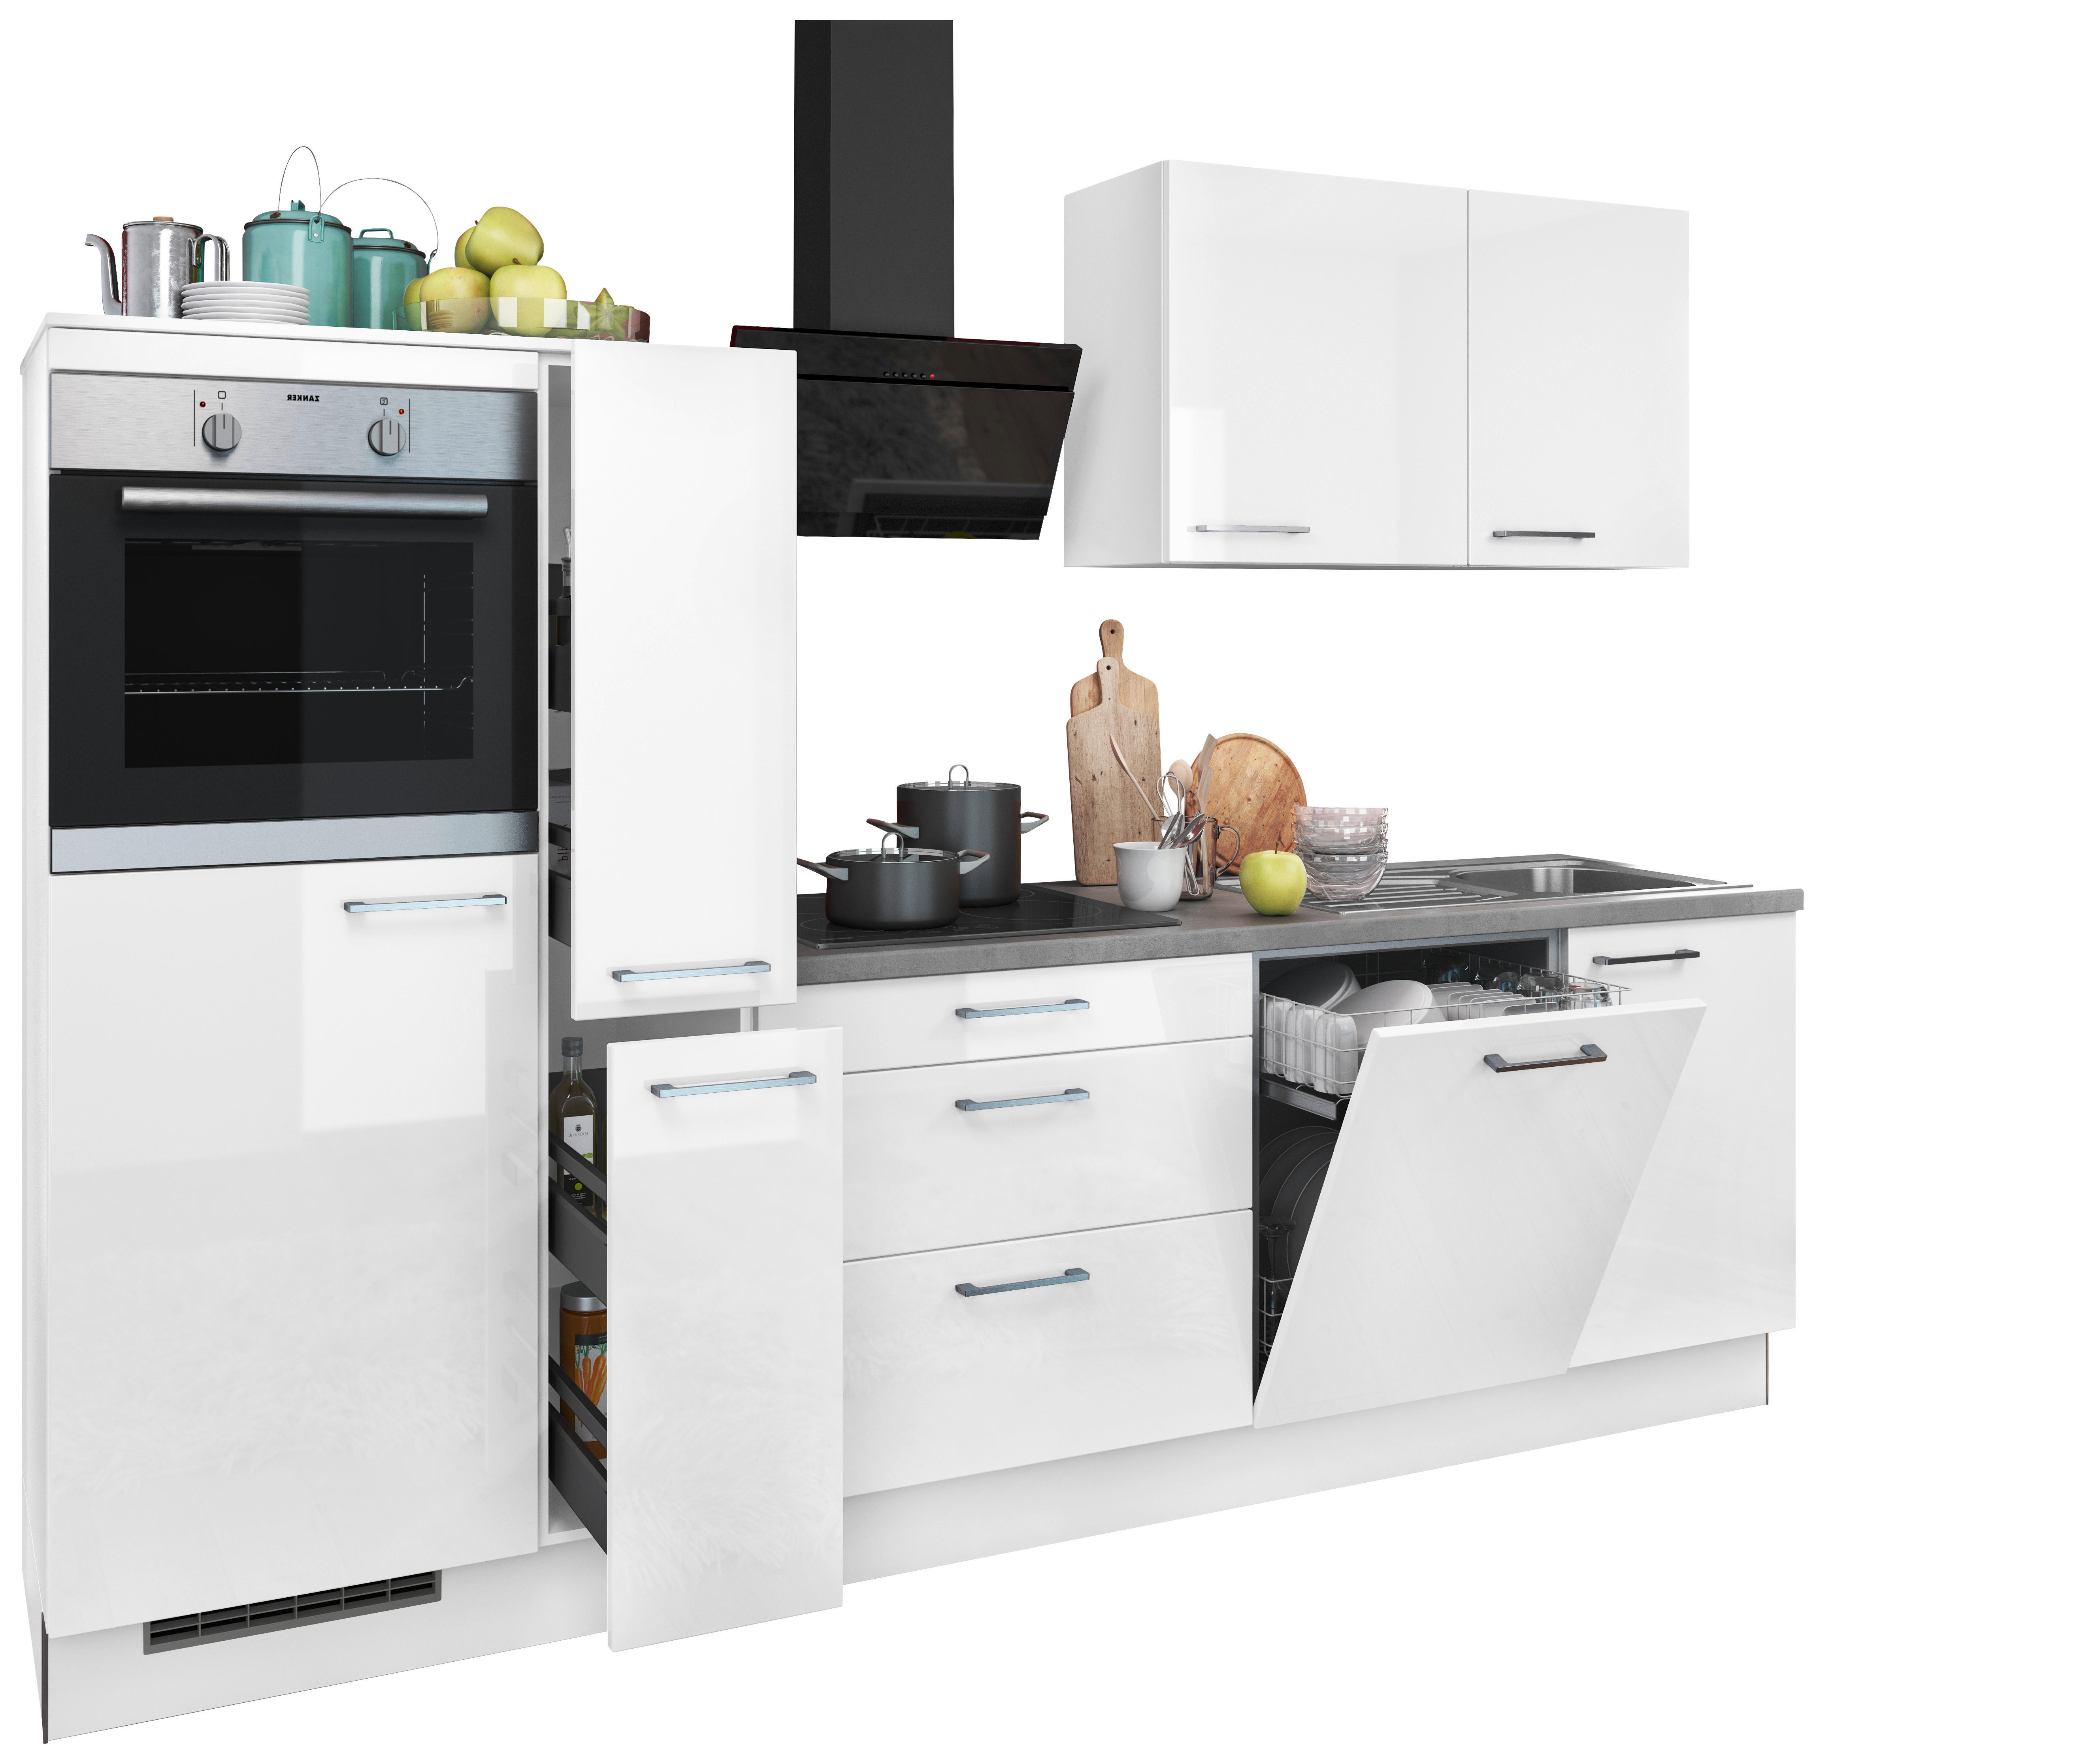 Küchenblock Eco links weiß Lack Hochglanz B/T: ca. 280x60 cm Eco links - weiß/grau (280,00/60,00cm)